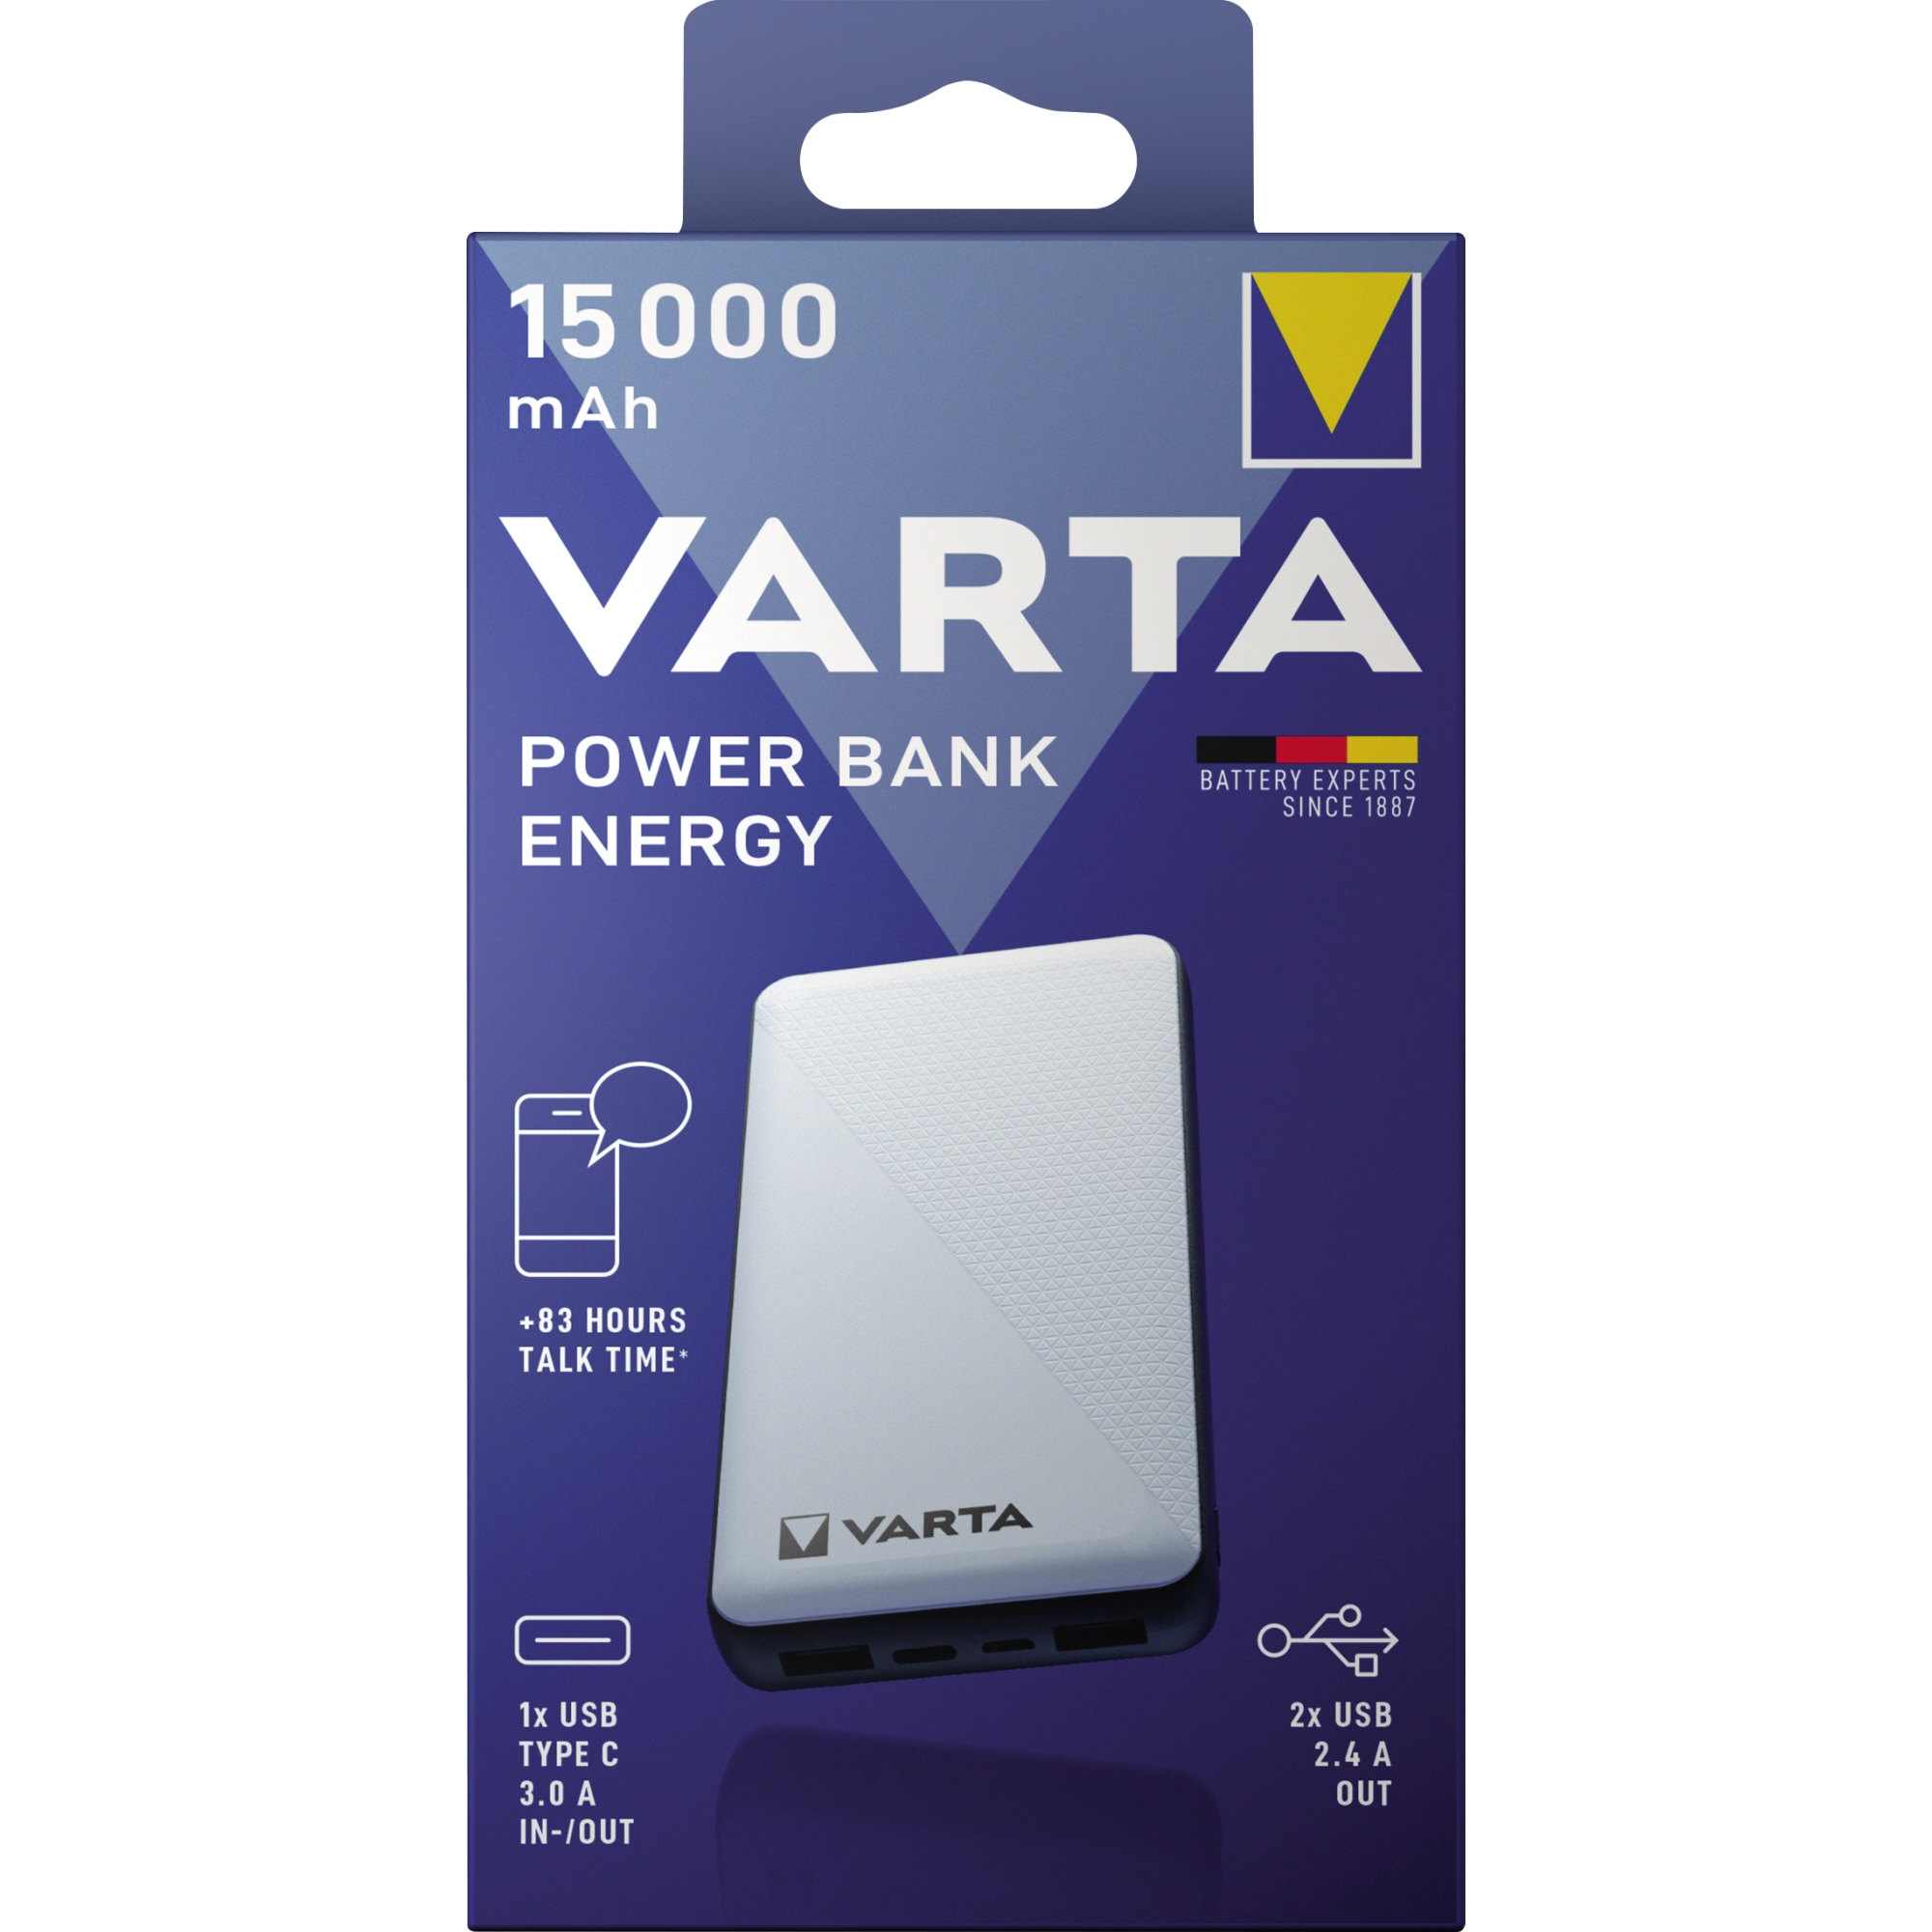 Varta Powerbank Energy 15.000 mAh